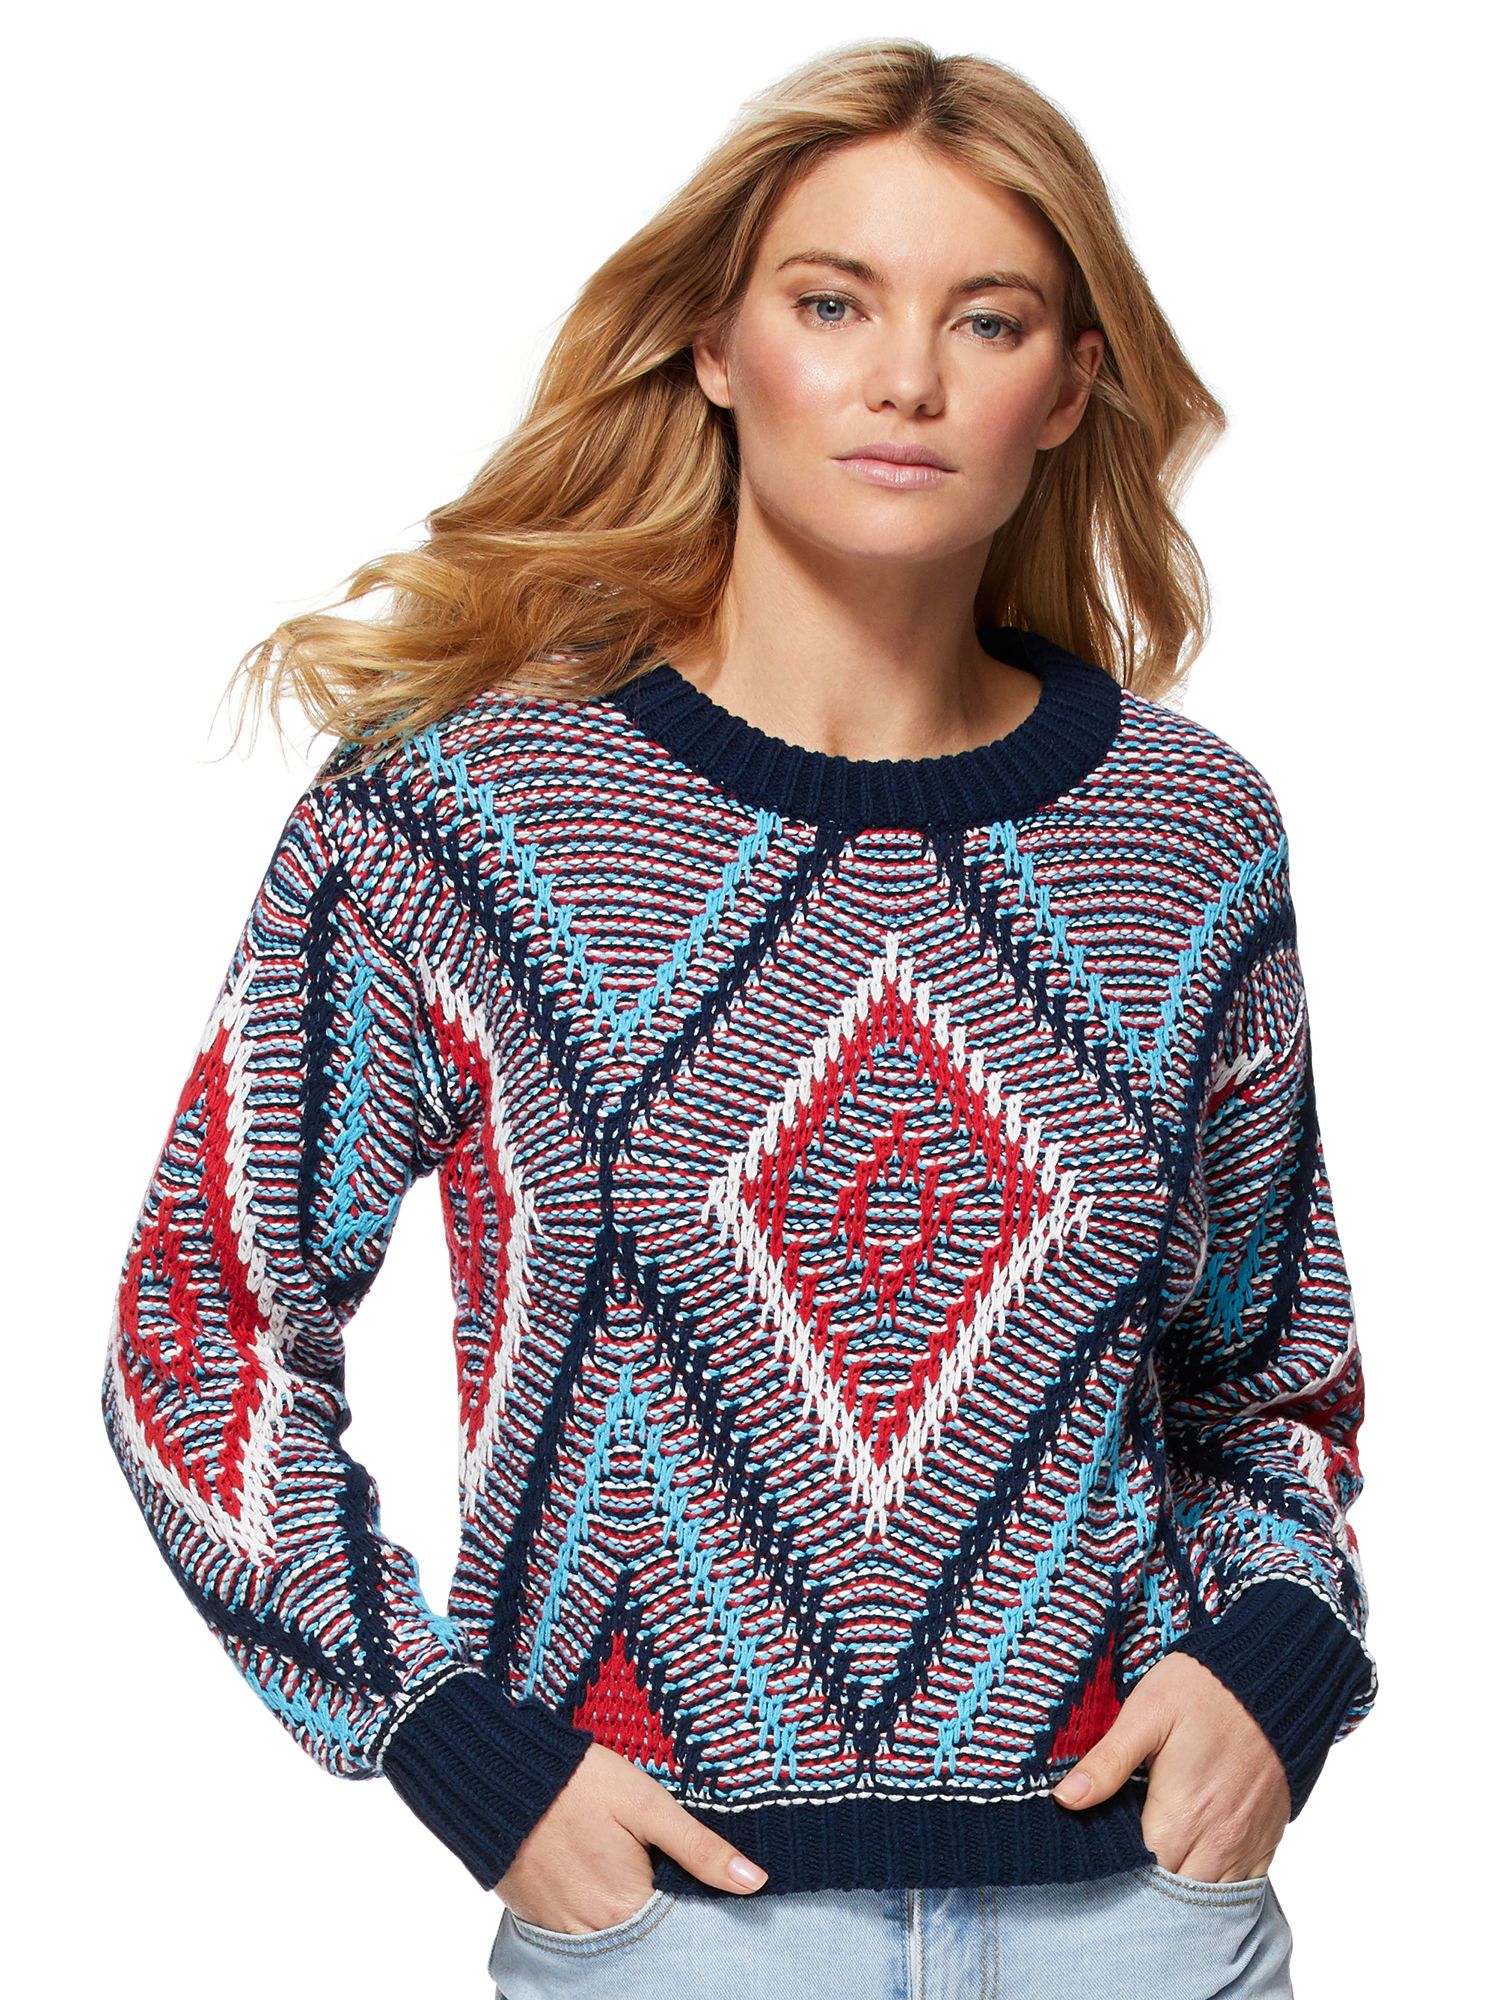 Scoop Geo Crew Neck Sweater Women's | Walmart (US)